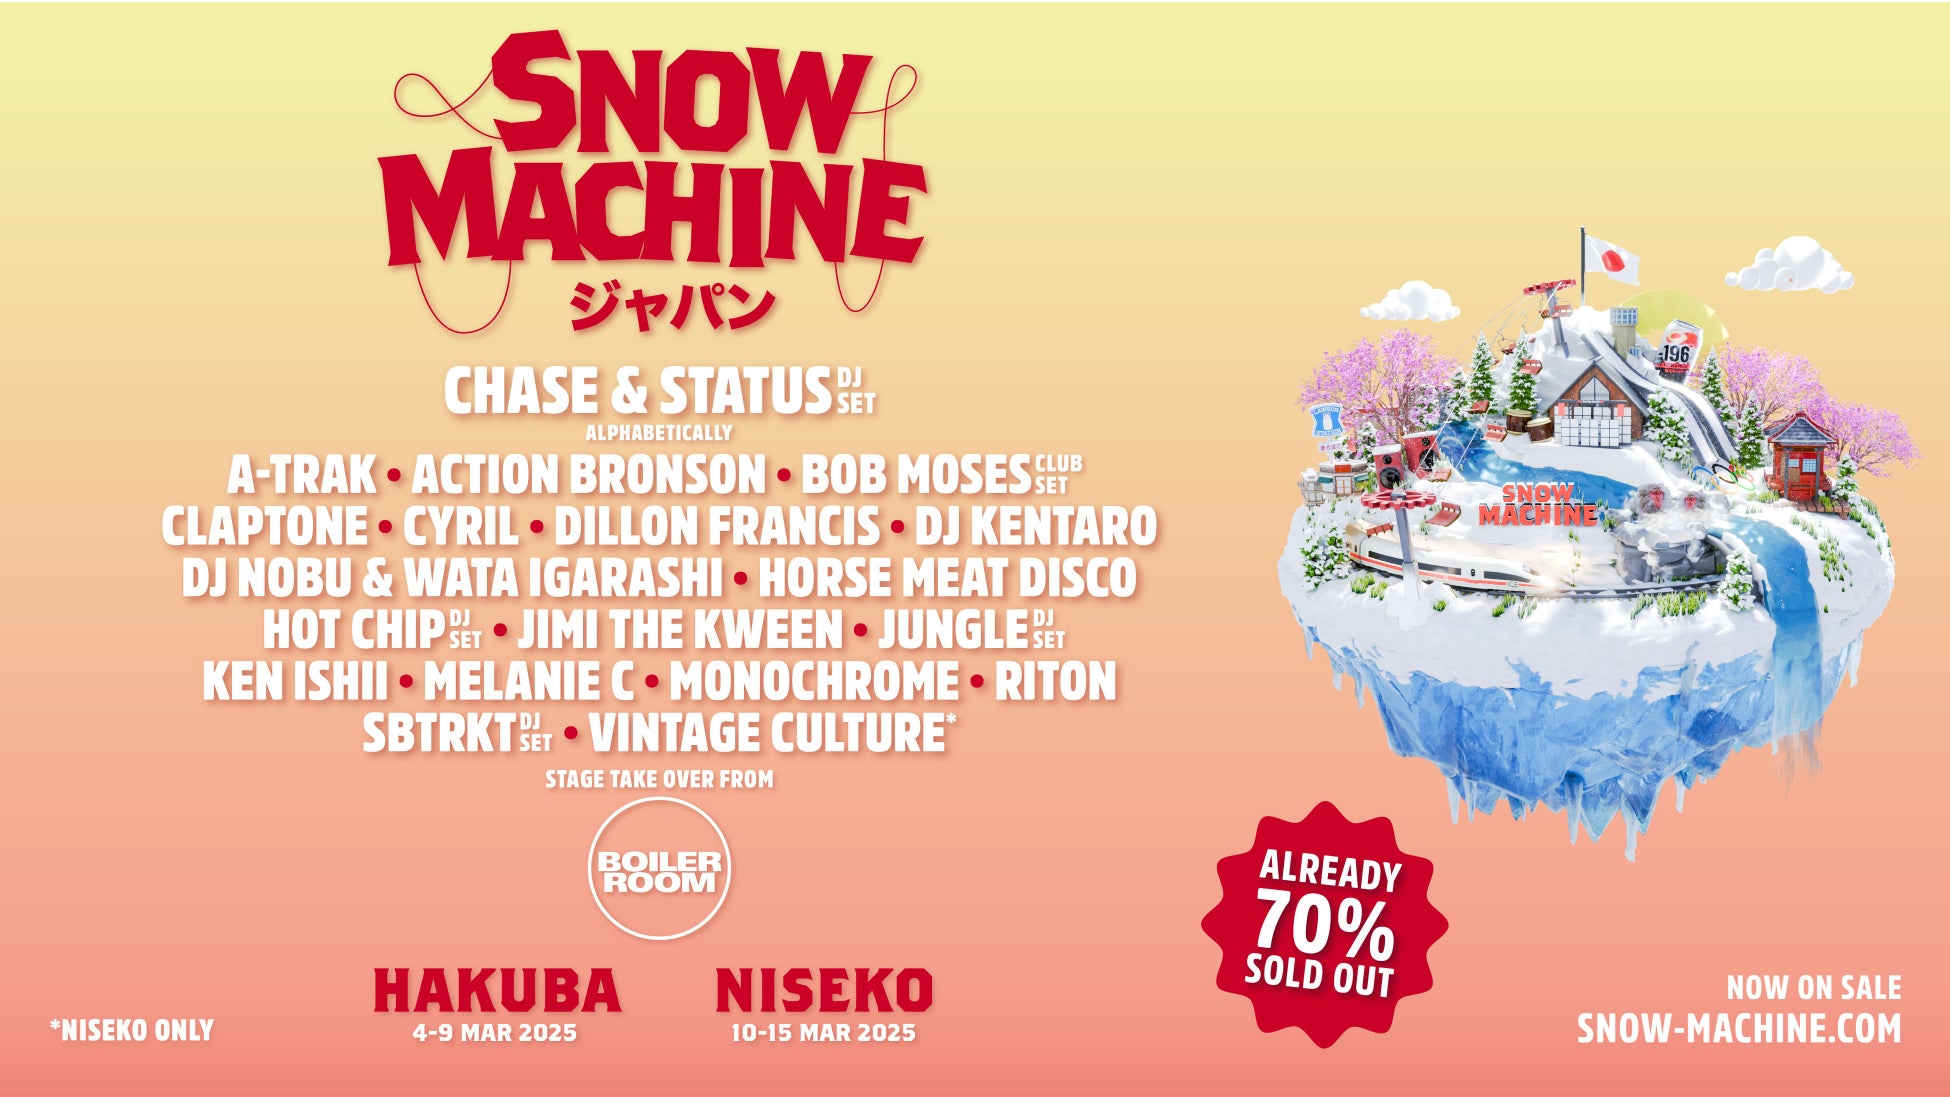 スキー場冬フェス『Snow Machine』2025年3月に北海道・ニセコで開催決定！ダンスミュージックとパウダースノーを満喫する4日間